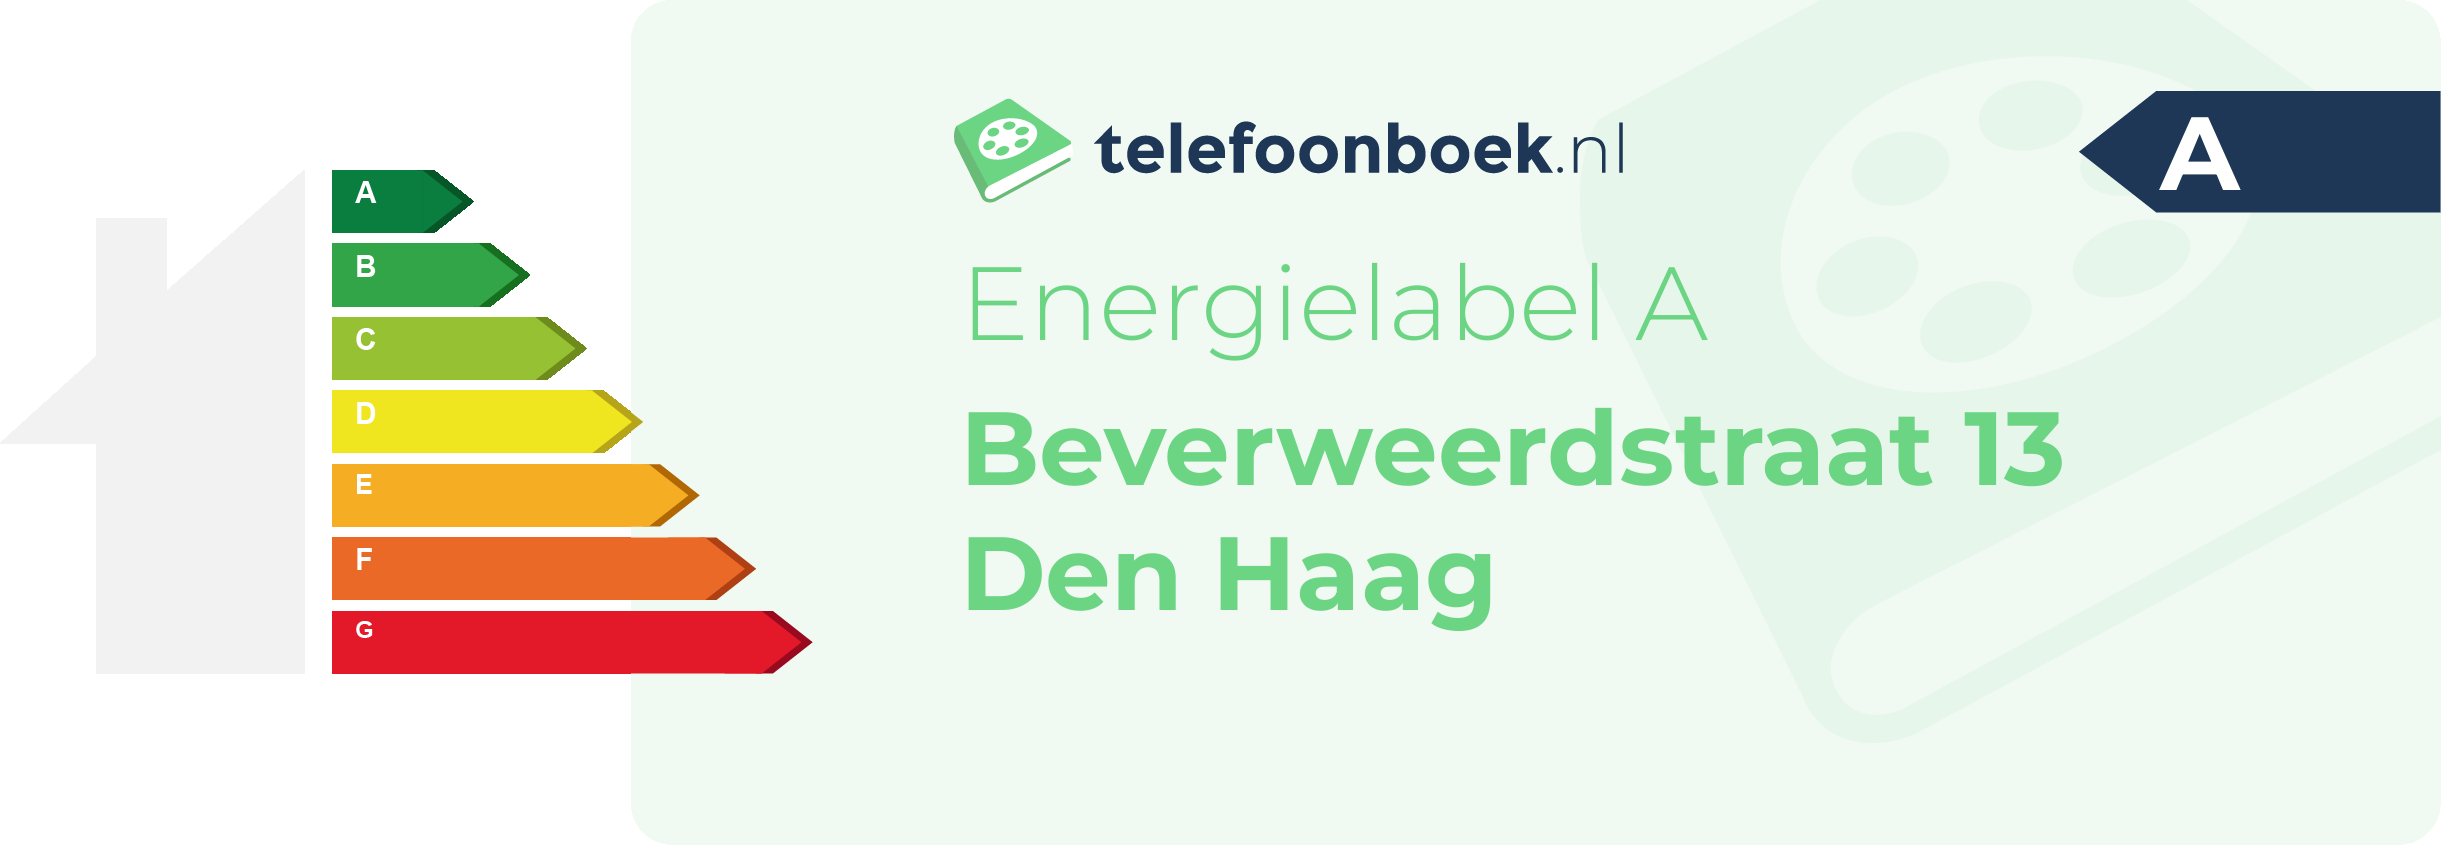 Energielabel Beverweerdstraat 13 Den Haag